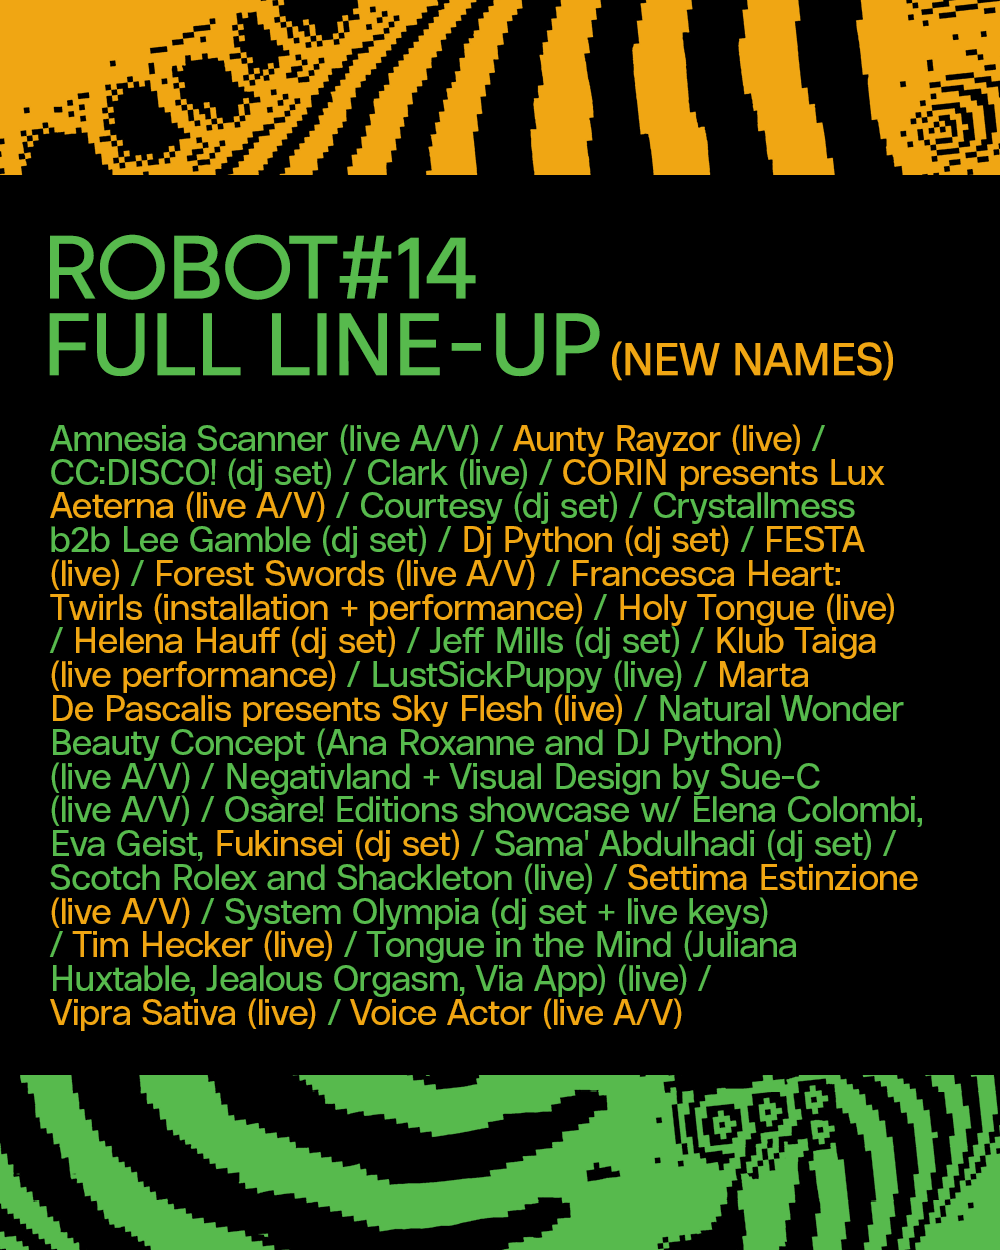 ROBOT Festival #14 - Página trasera